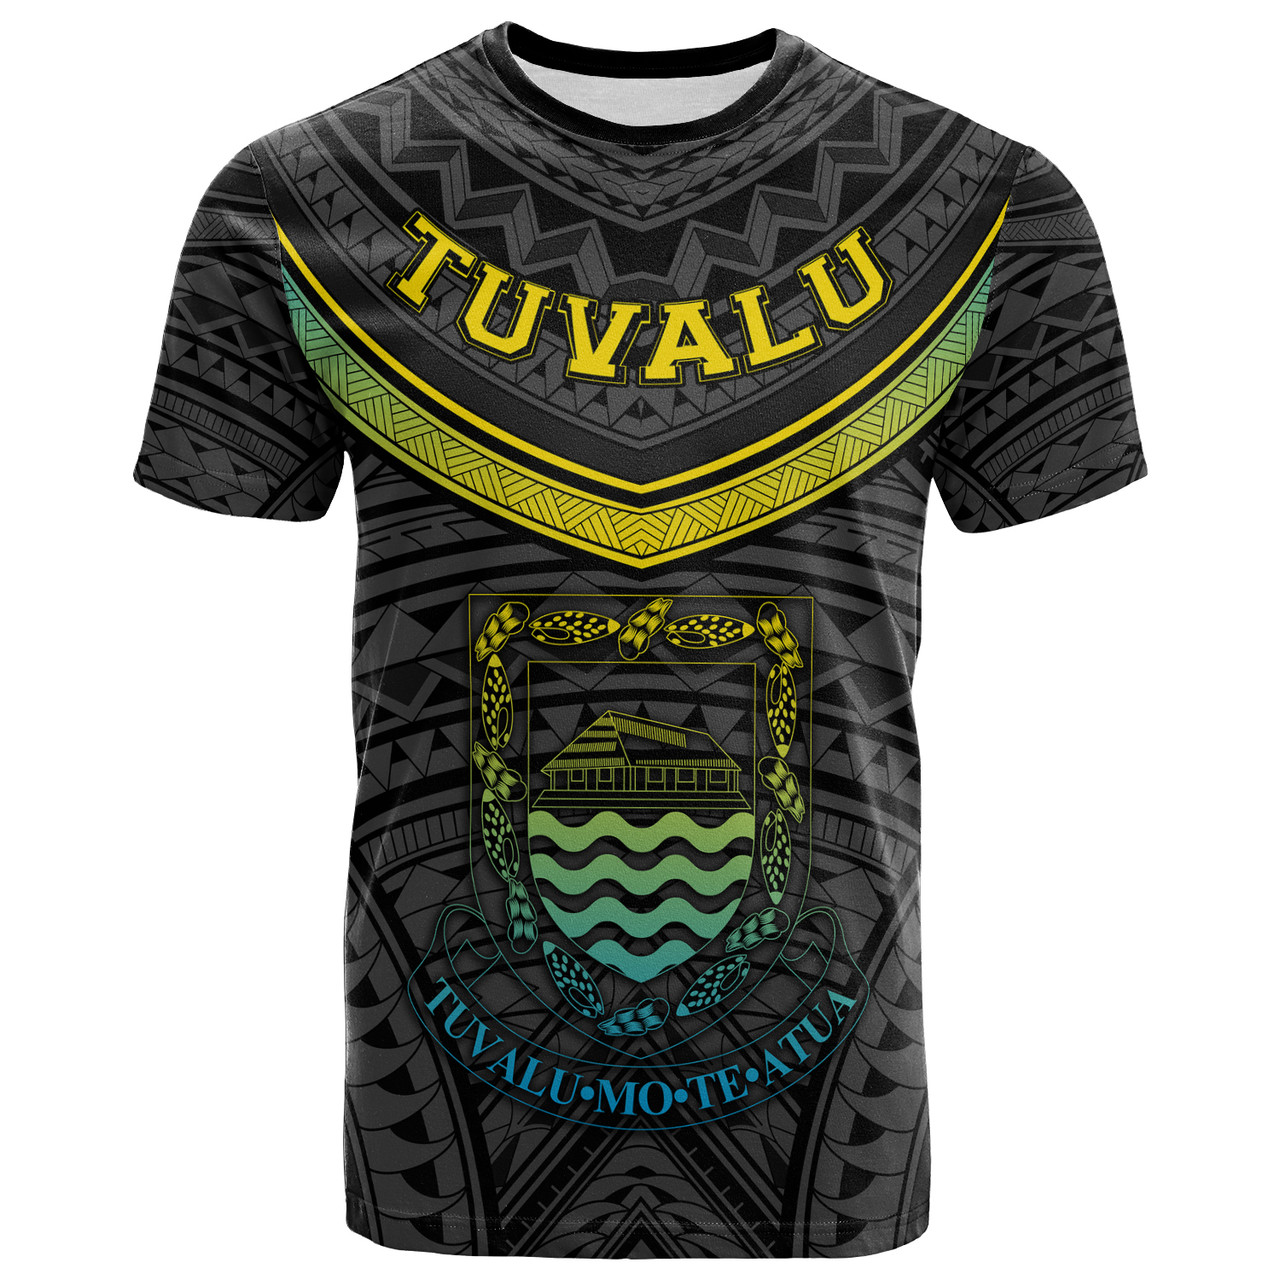 Tuvalu T-Shirt Polynesian Authen